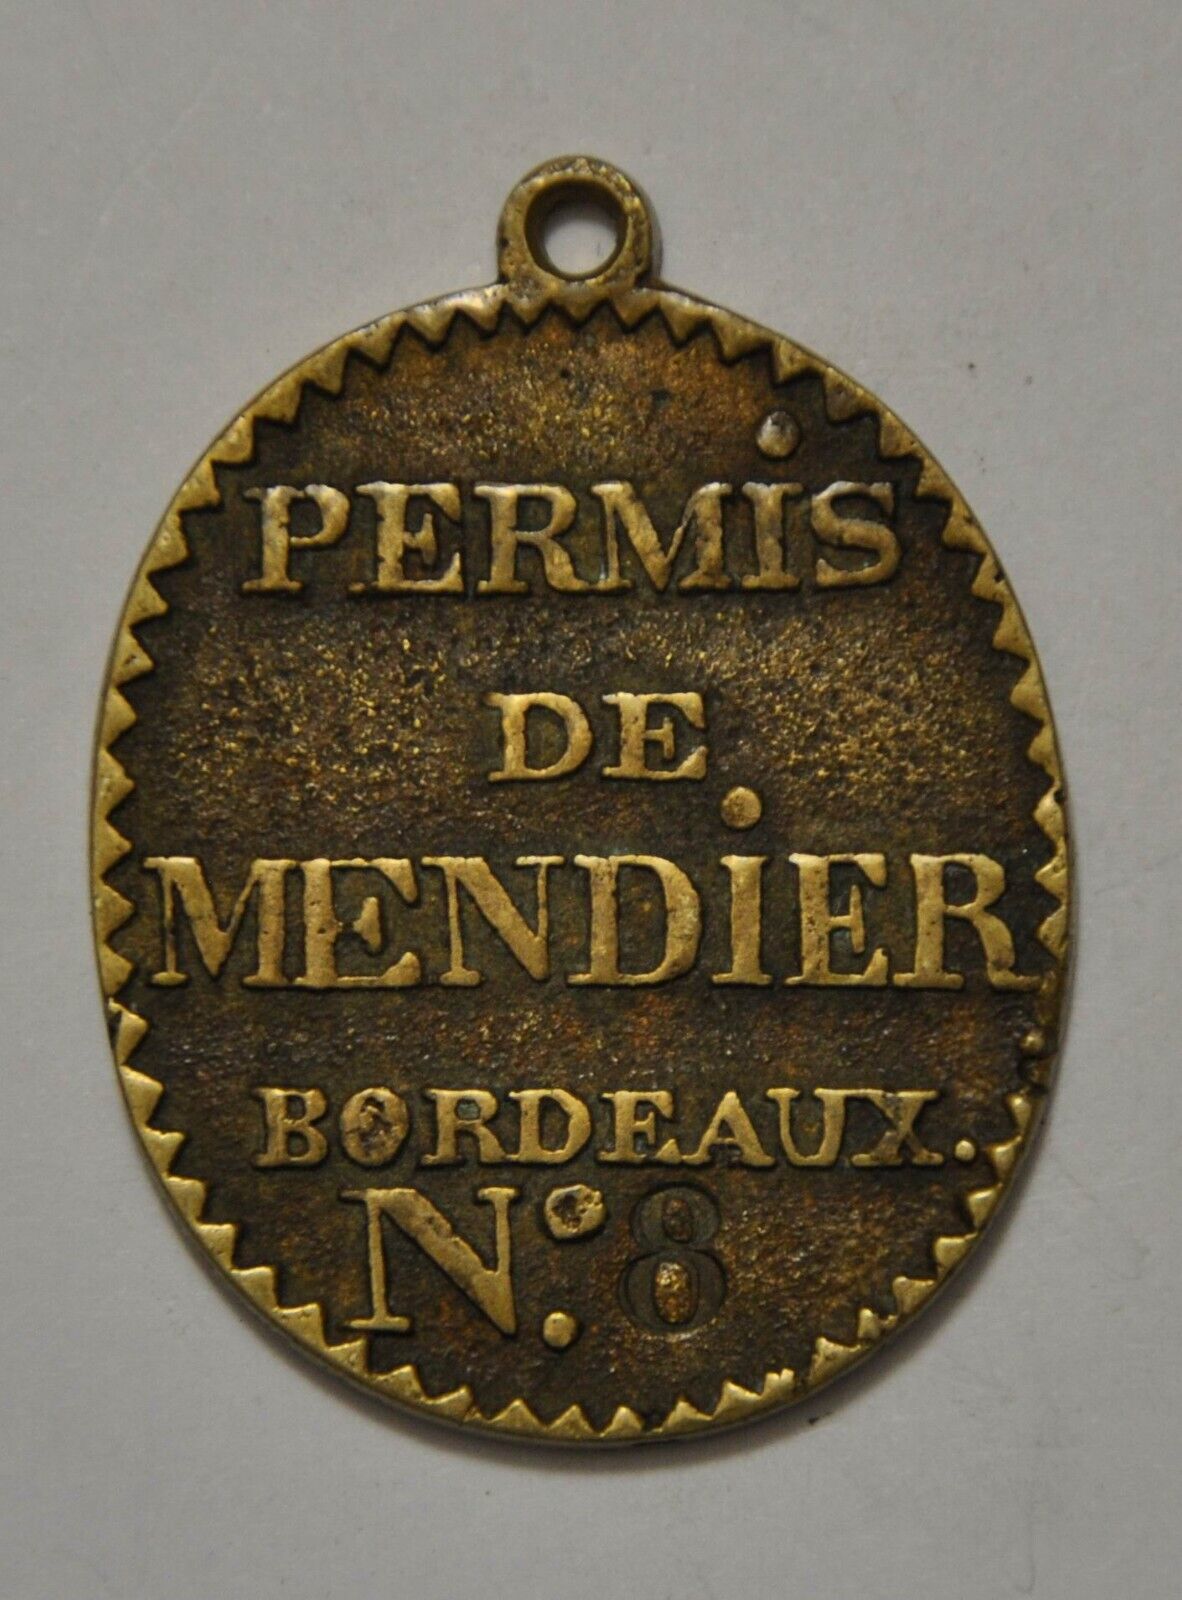 Trade plate - BORDEAUX begging permit no. 8 circa 1820-1900 NO COPY